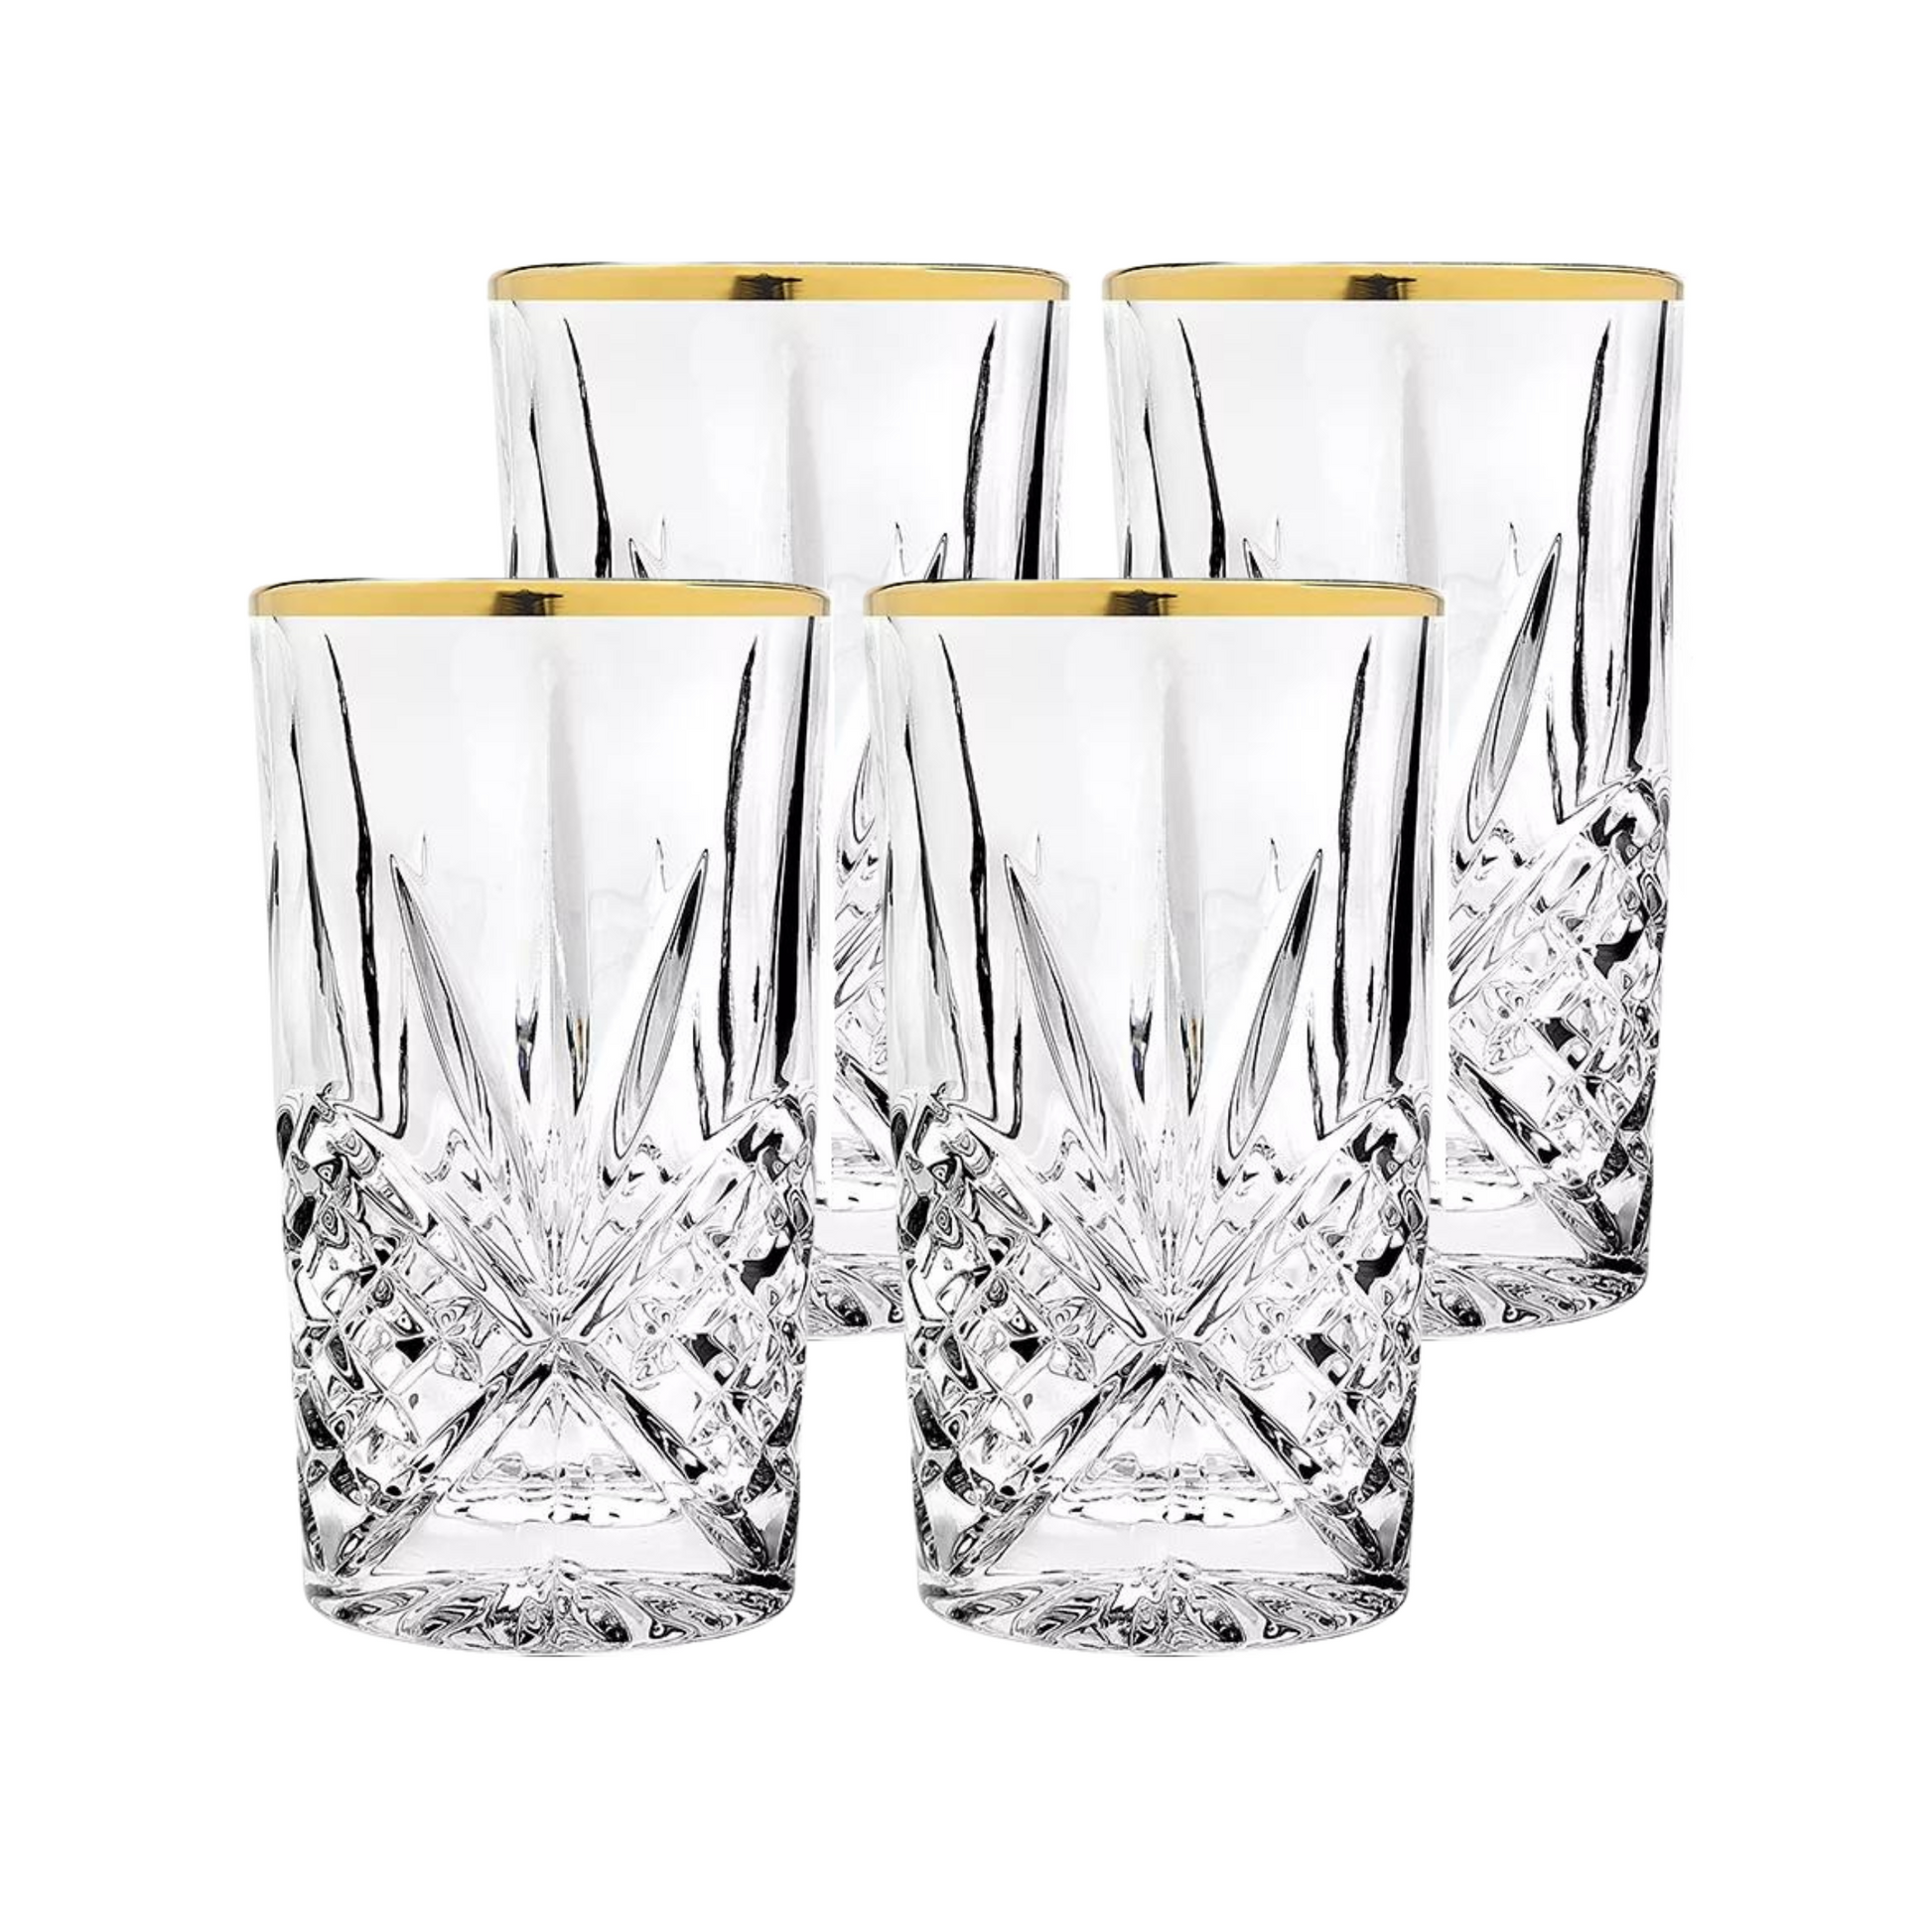 Luxus Kristall Latte Macchiato Gläser mit Goldrand 350ml Trinkgläser 4er Set "Star"